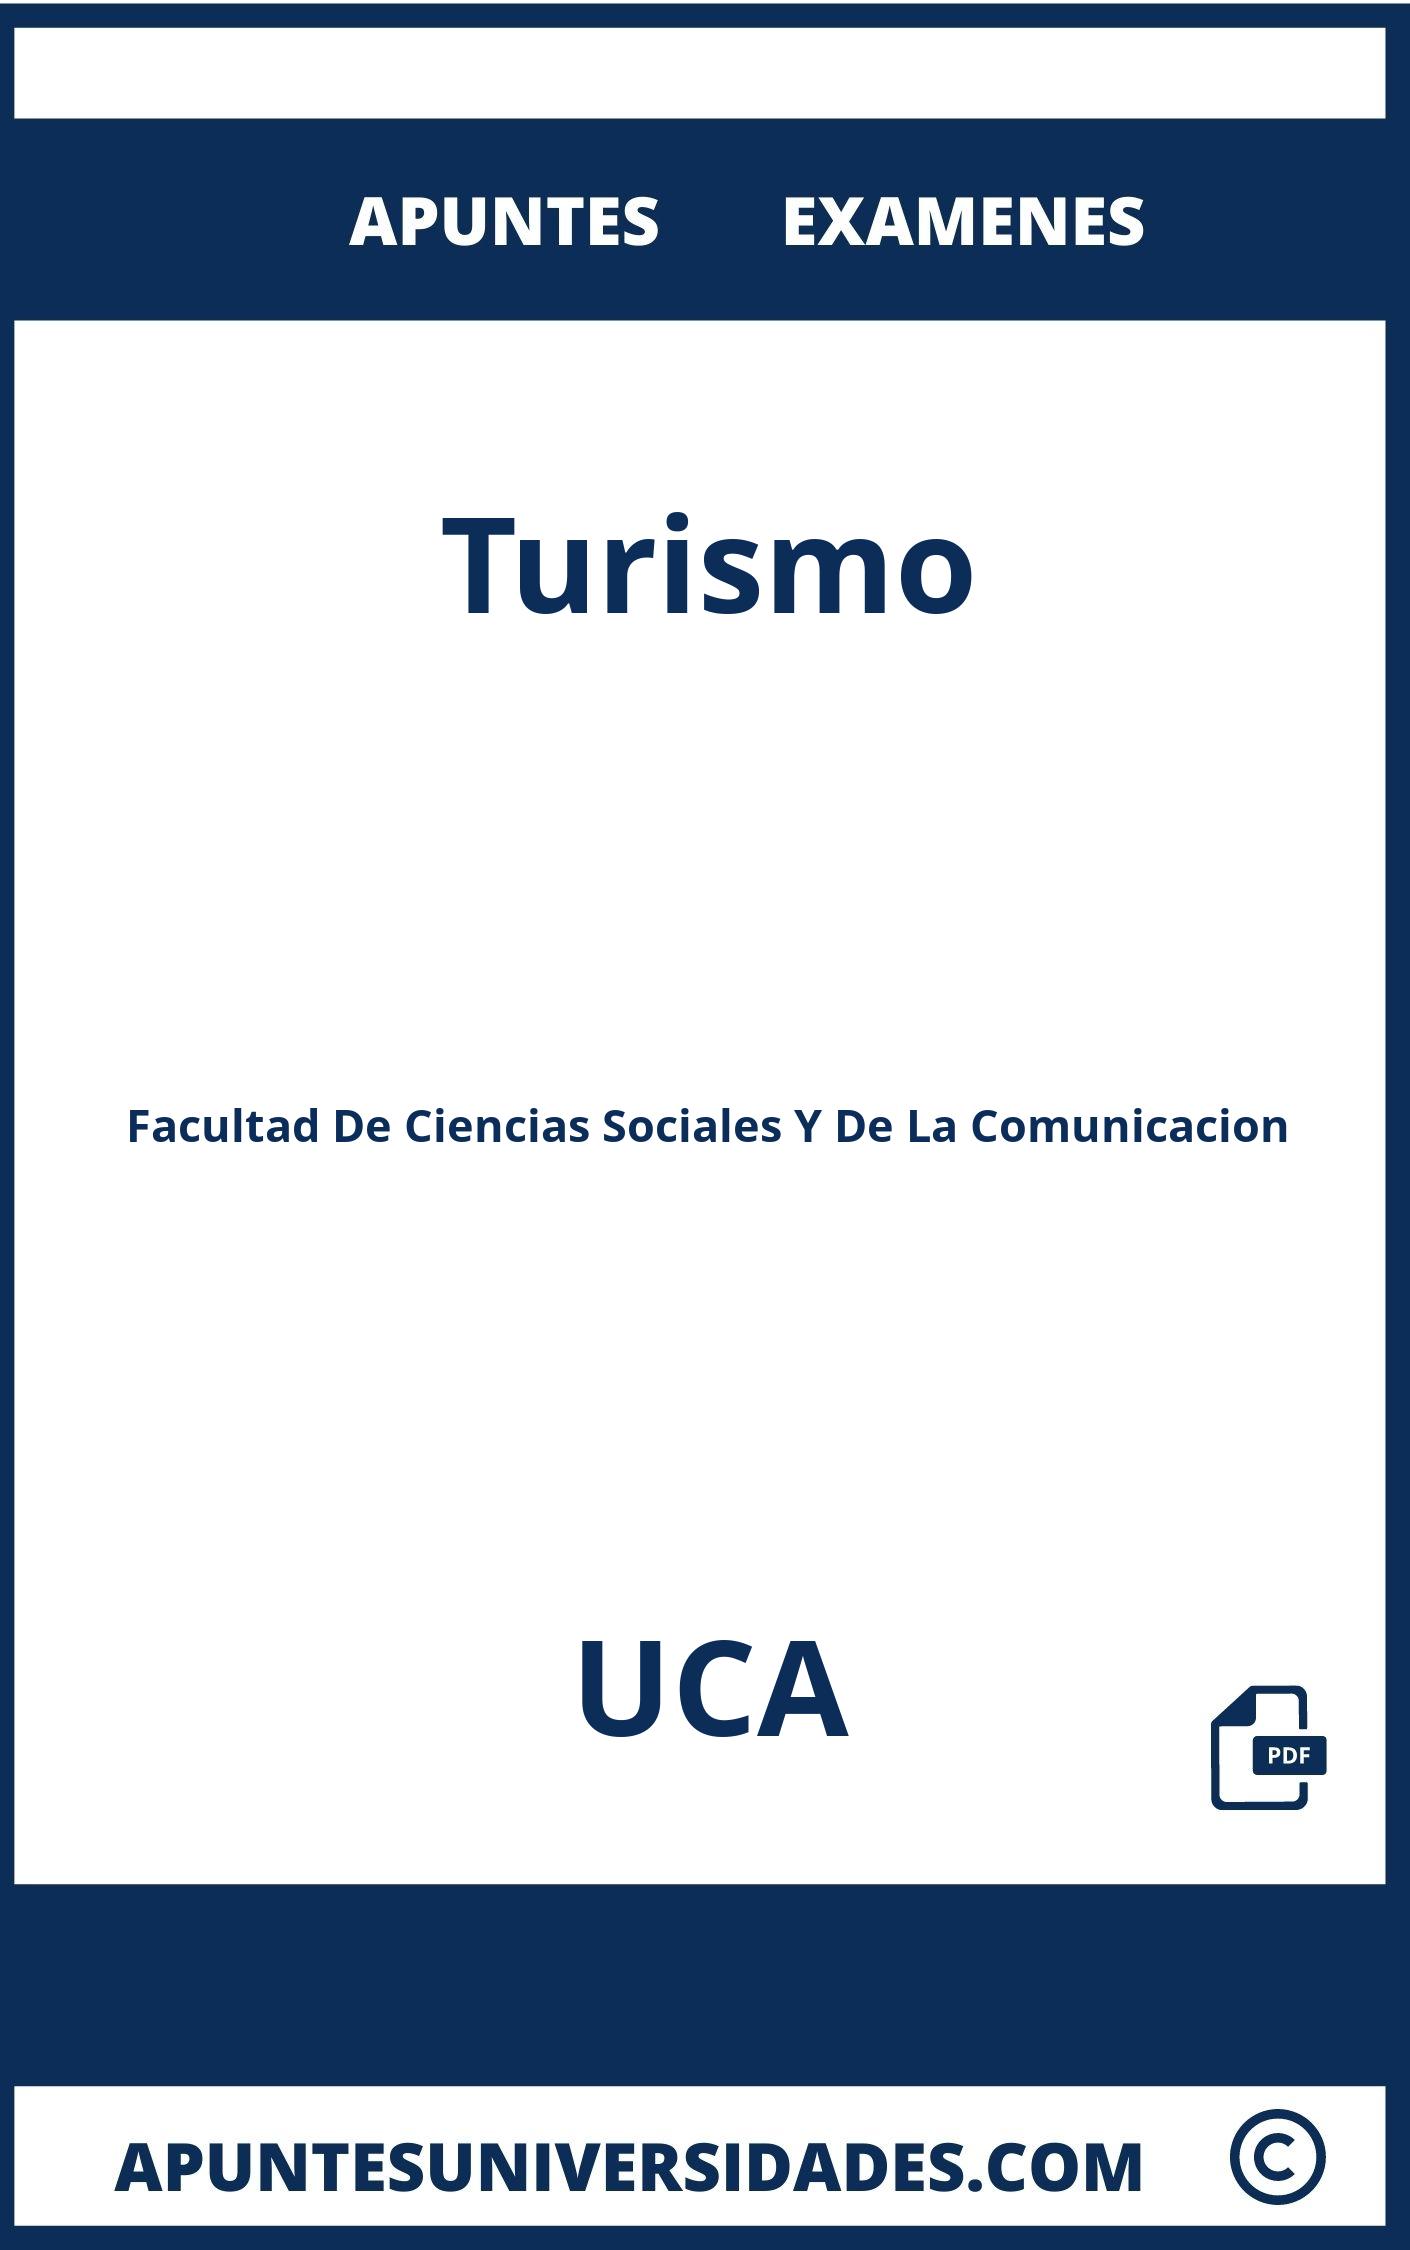 Turismo UCA Examenes Apuntes